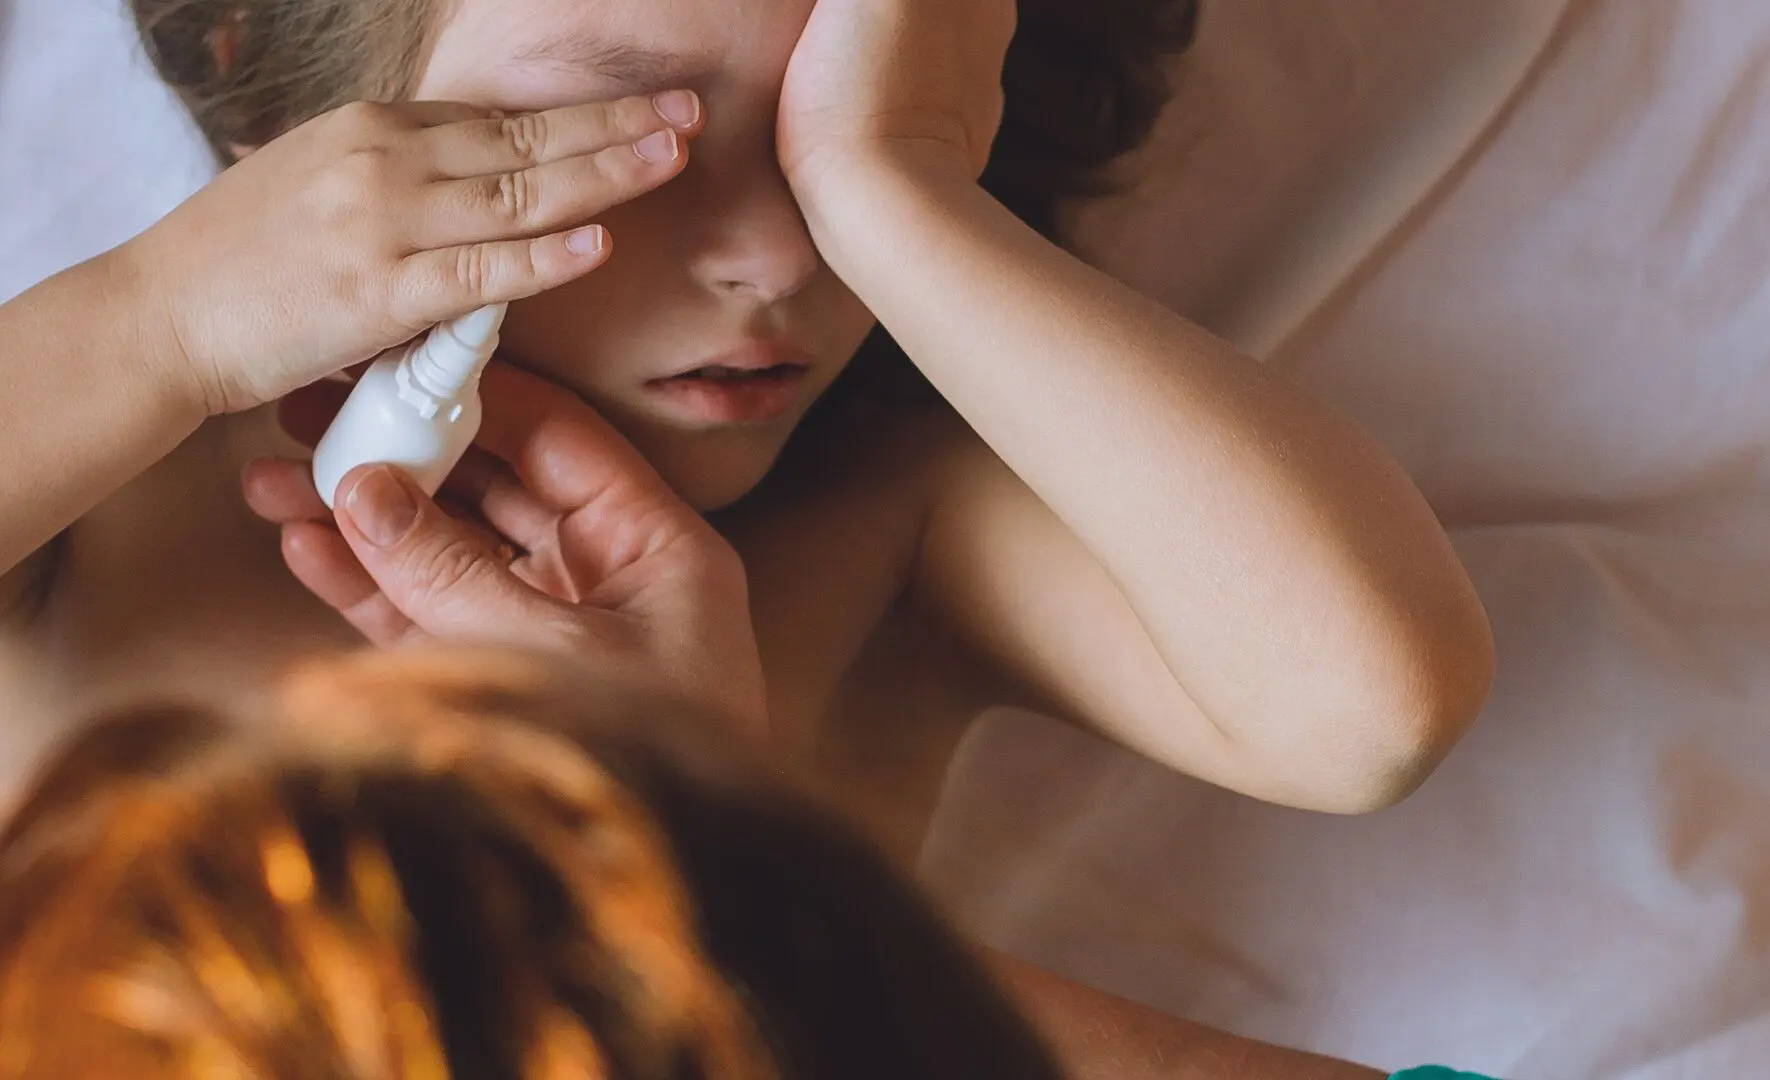  Ein Mädchen hält sich die Hände vors Gesicht, während ihre Mutter ihr Allergie-Augentropfen gibt, um den Juckreiz zu lindern